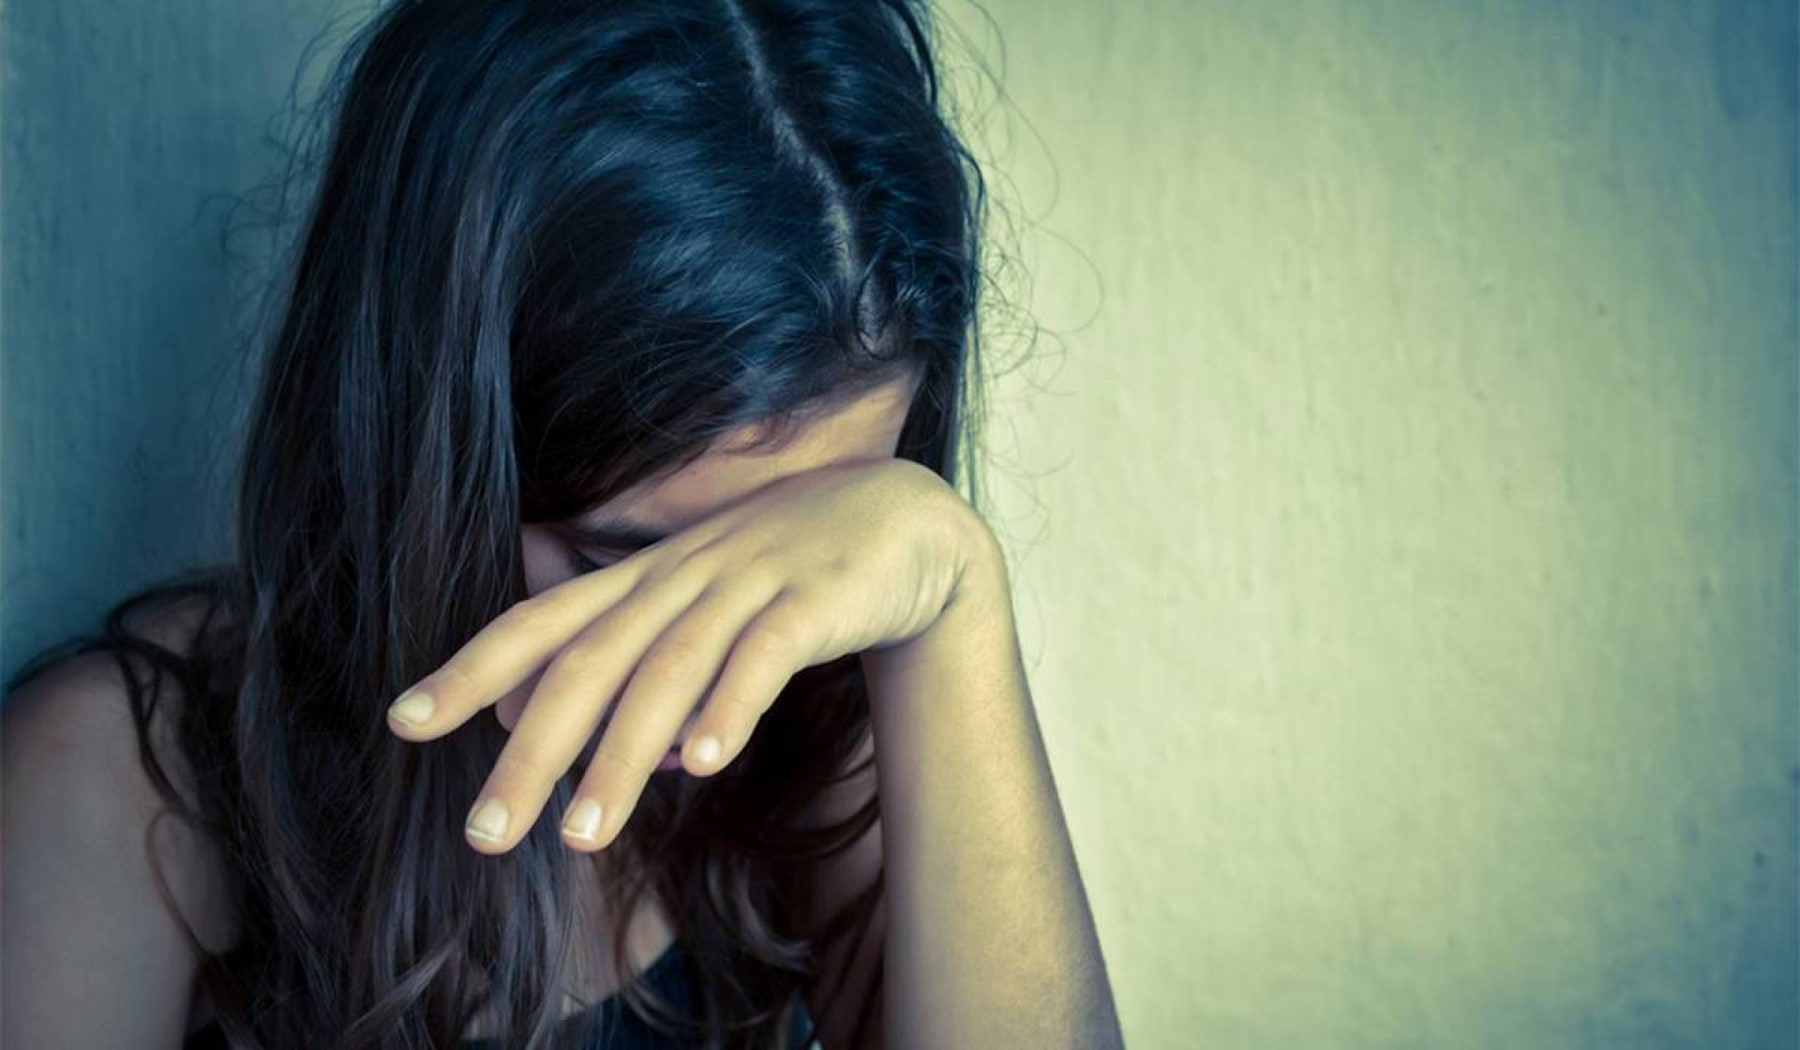 В Израиле 30 мужчин изнасиловали девушку-подростка. Дело дошло до премьер-министра